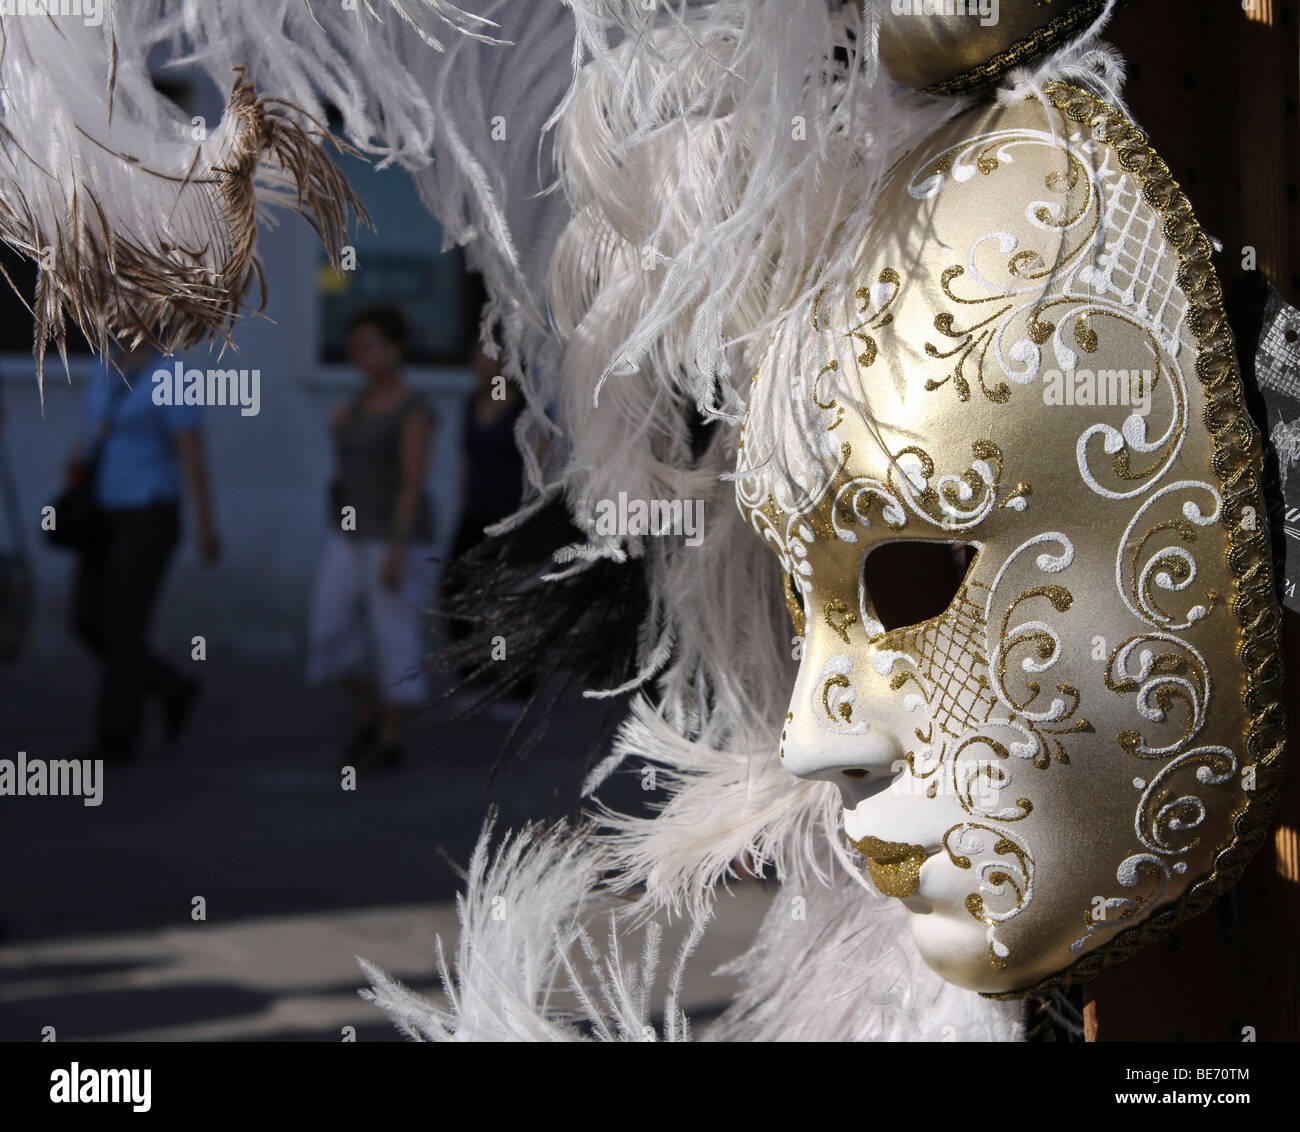 Les masques de carnaval dans les rues de Venise, Italie, Europe Banque D'Images